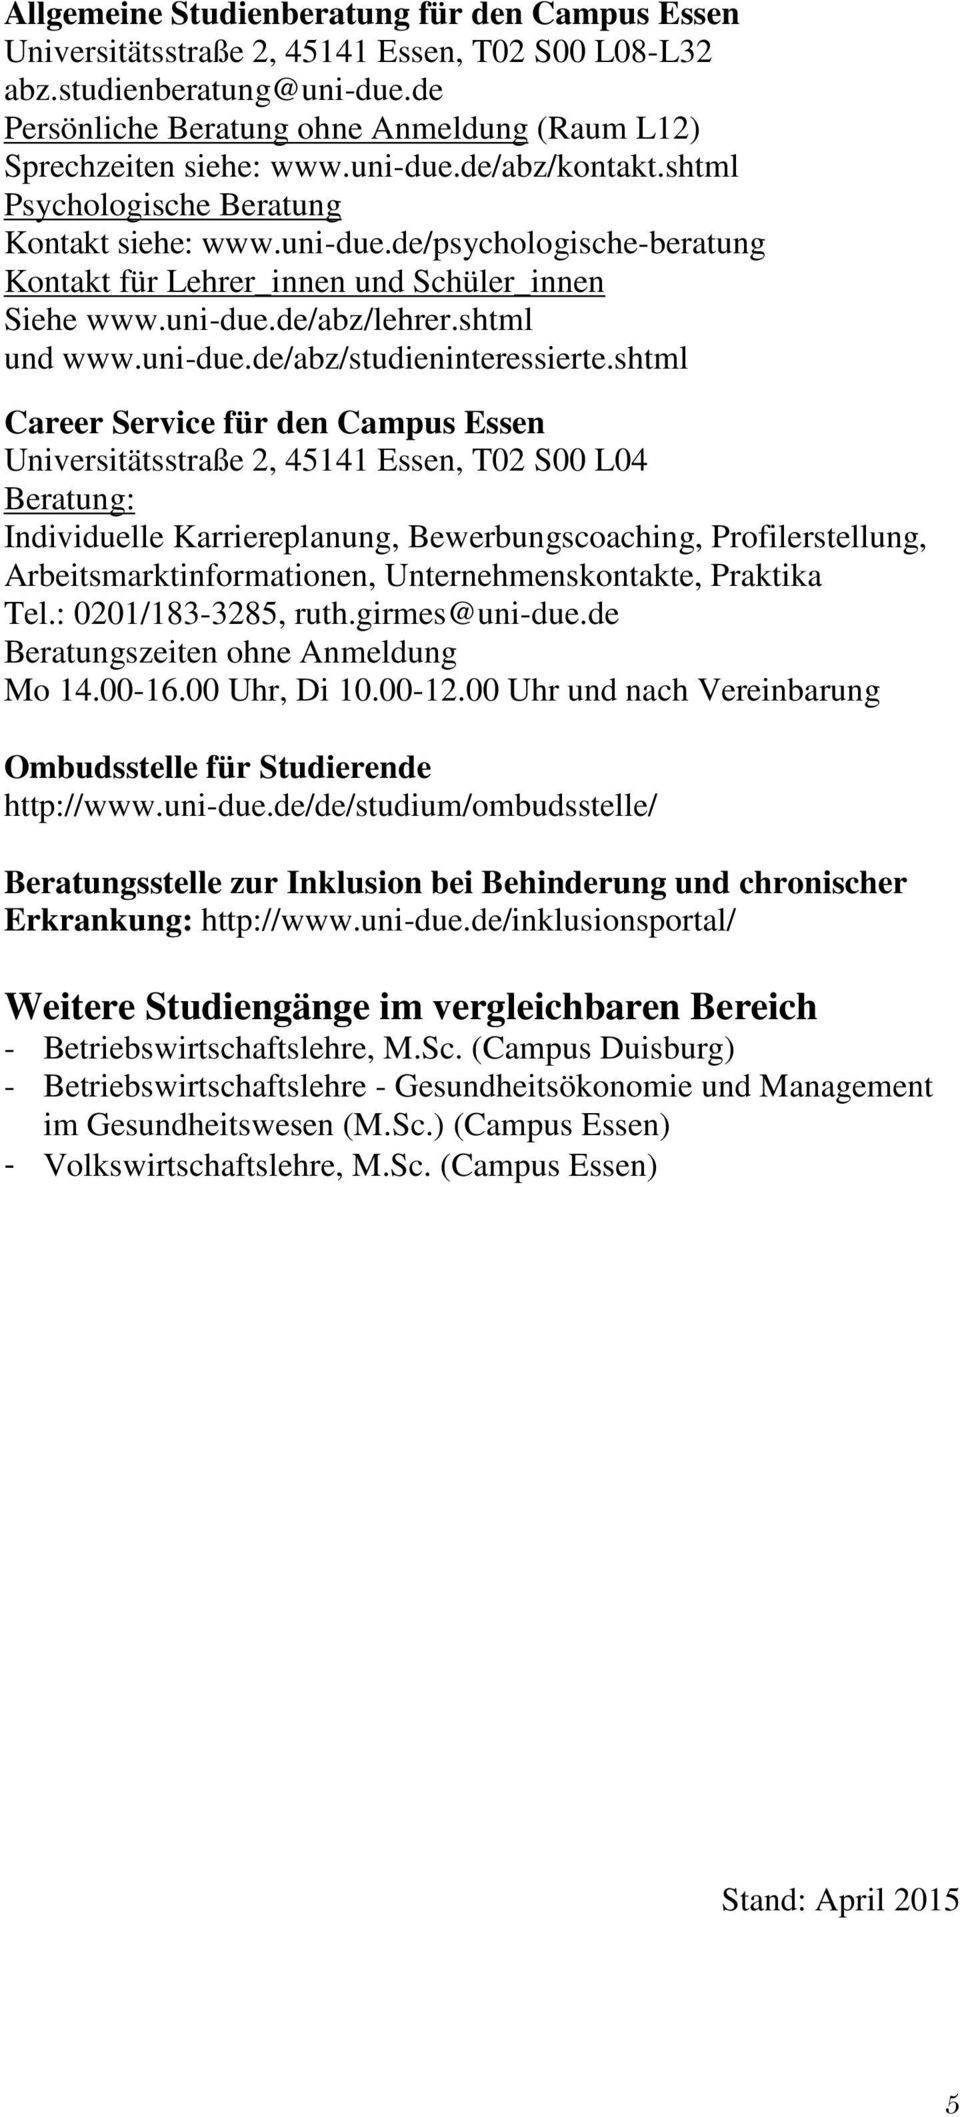 uni-due.de/abz/lehrer.shtml und www.uni-due.de/abz/studieninteressierte.